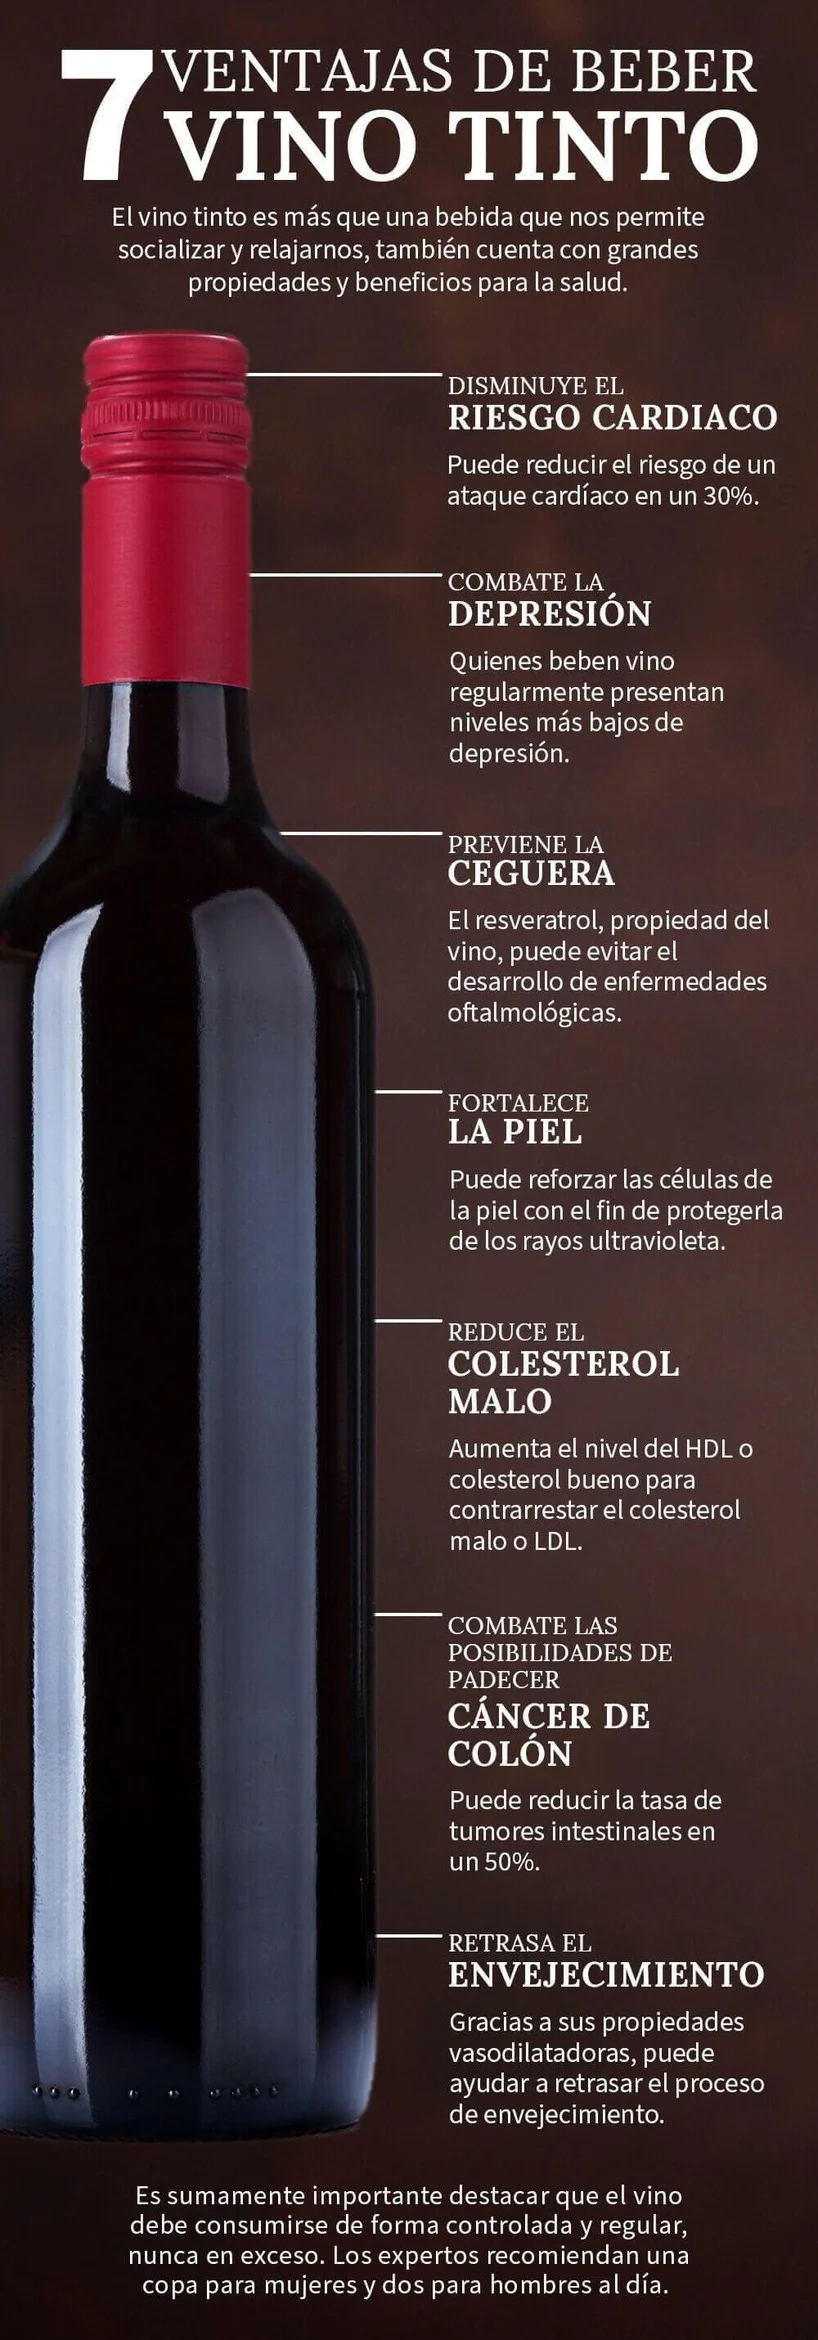 infografia de ventajas de beber vino